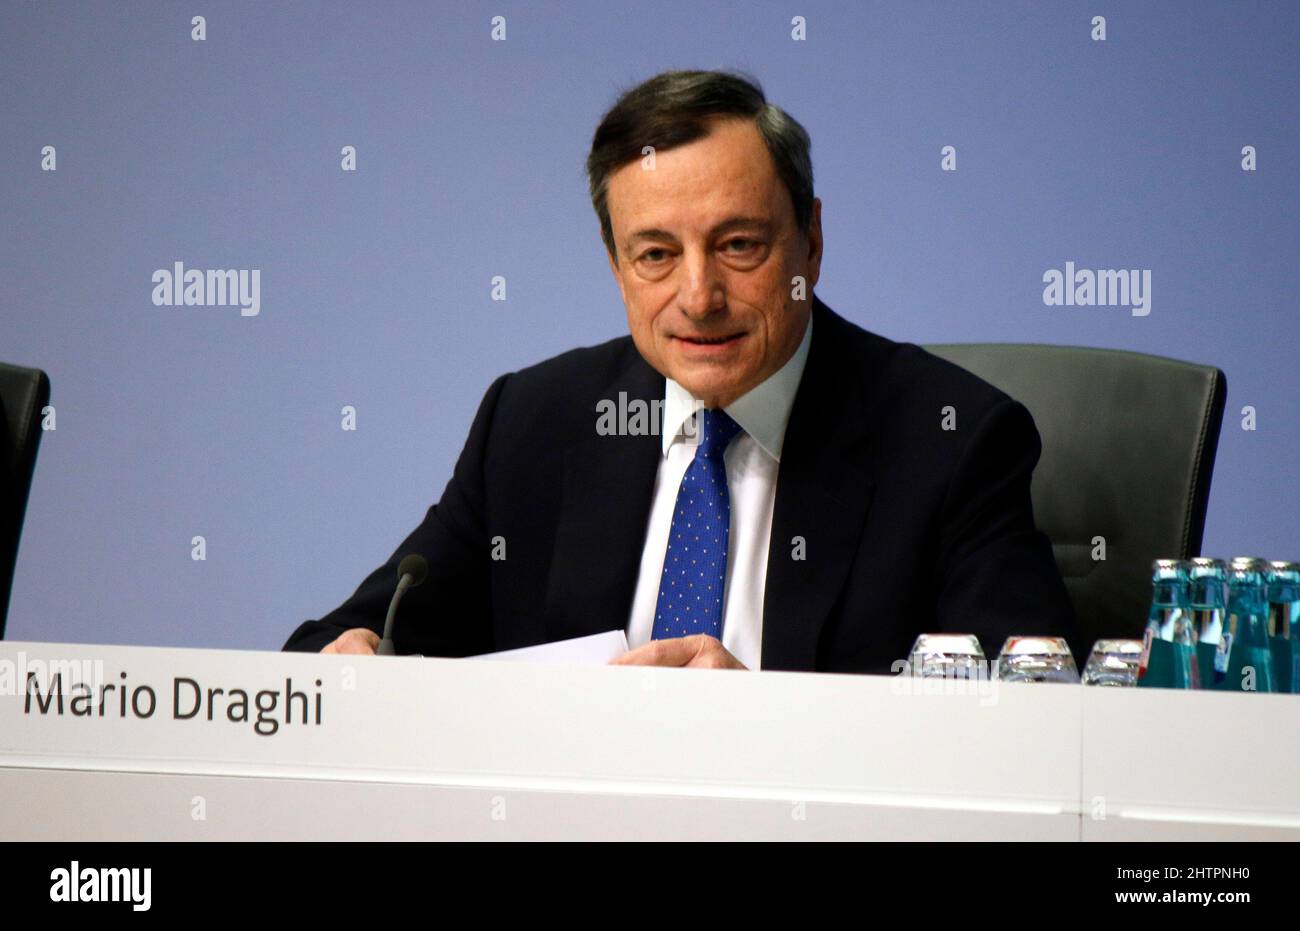 Mario Draghi - Pressekonferenz der EZB/BCE, 9. Maerz 2017, Frankfurt am Main. Banque D'Images